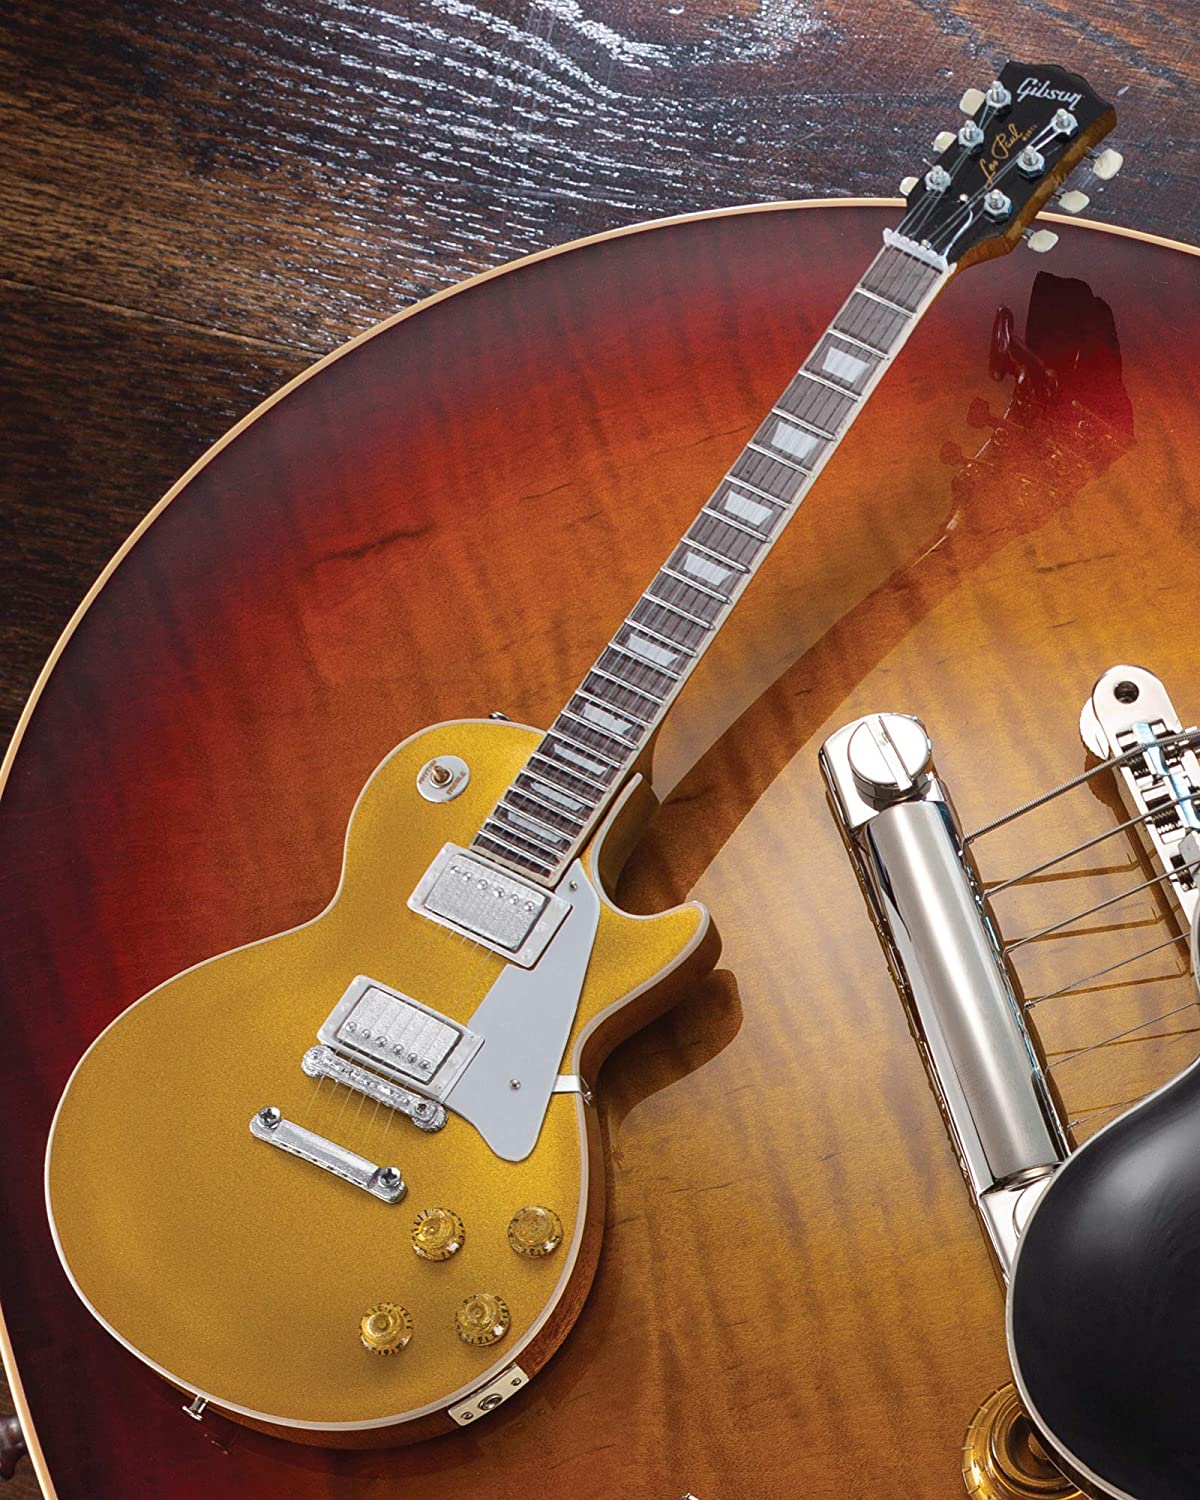 Duane Allman Gibson 1957 Les Paul Goldtop Mini Guitar Replica Collectible